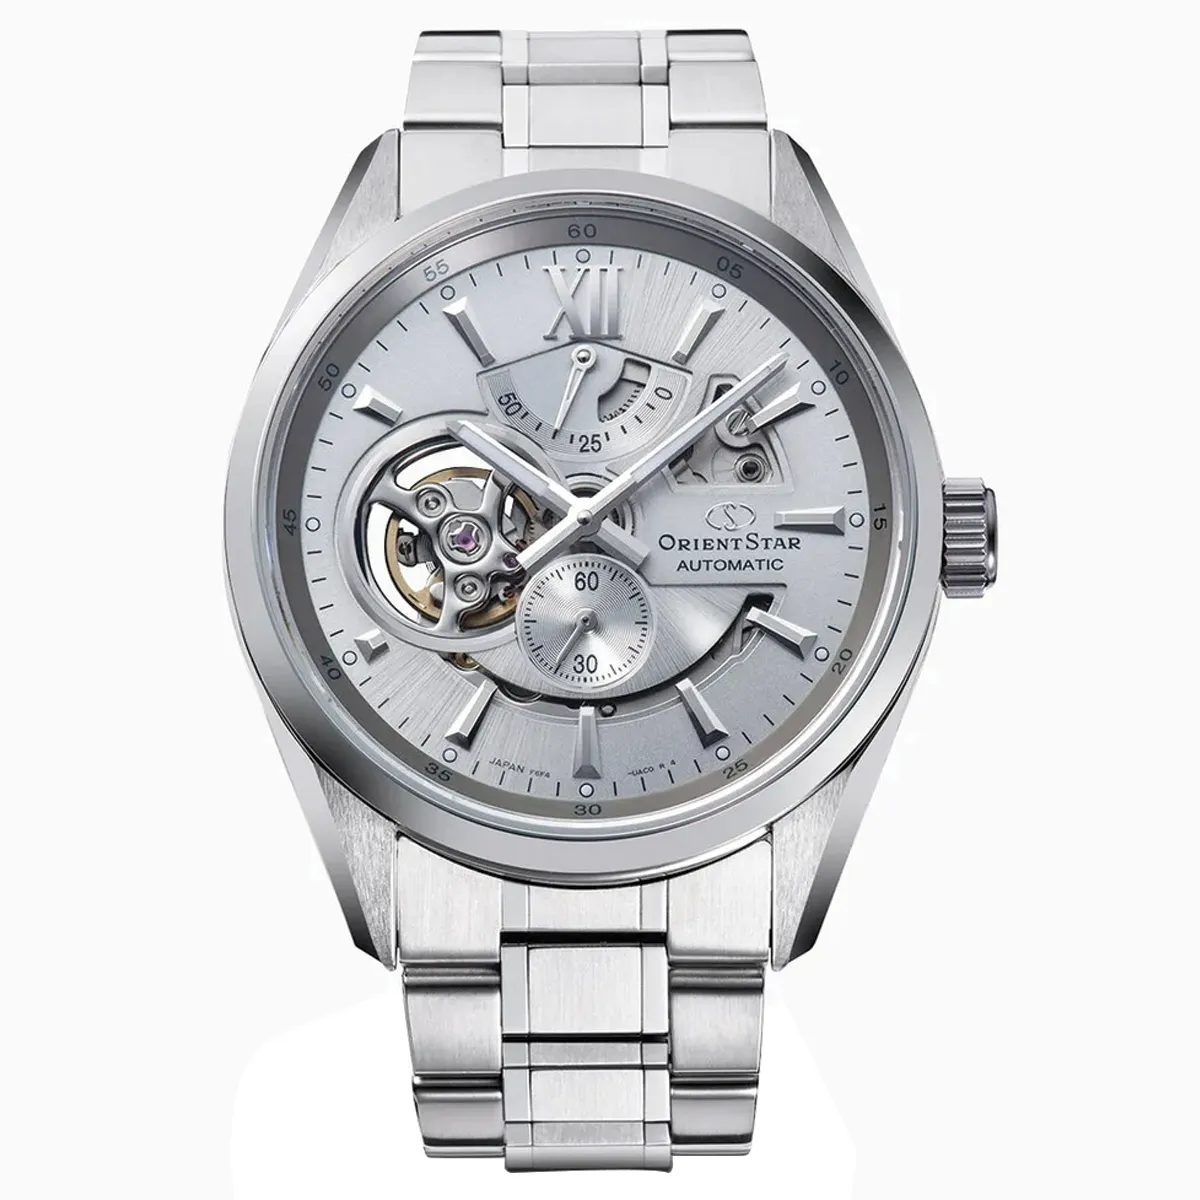 Đồng hồ Orient Star Contemporary Modern Skeleton RE-AV0125S00B mặt số màu xám bạc. Dây đeo bằng thép. Thân vỏ bằng thép.